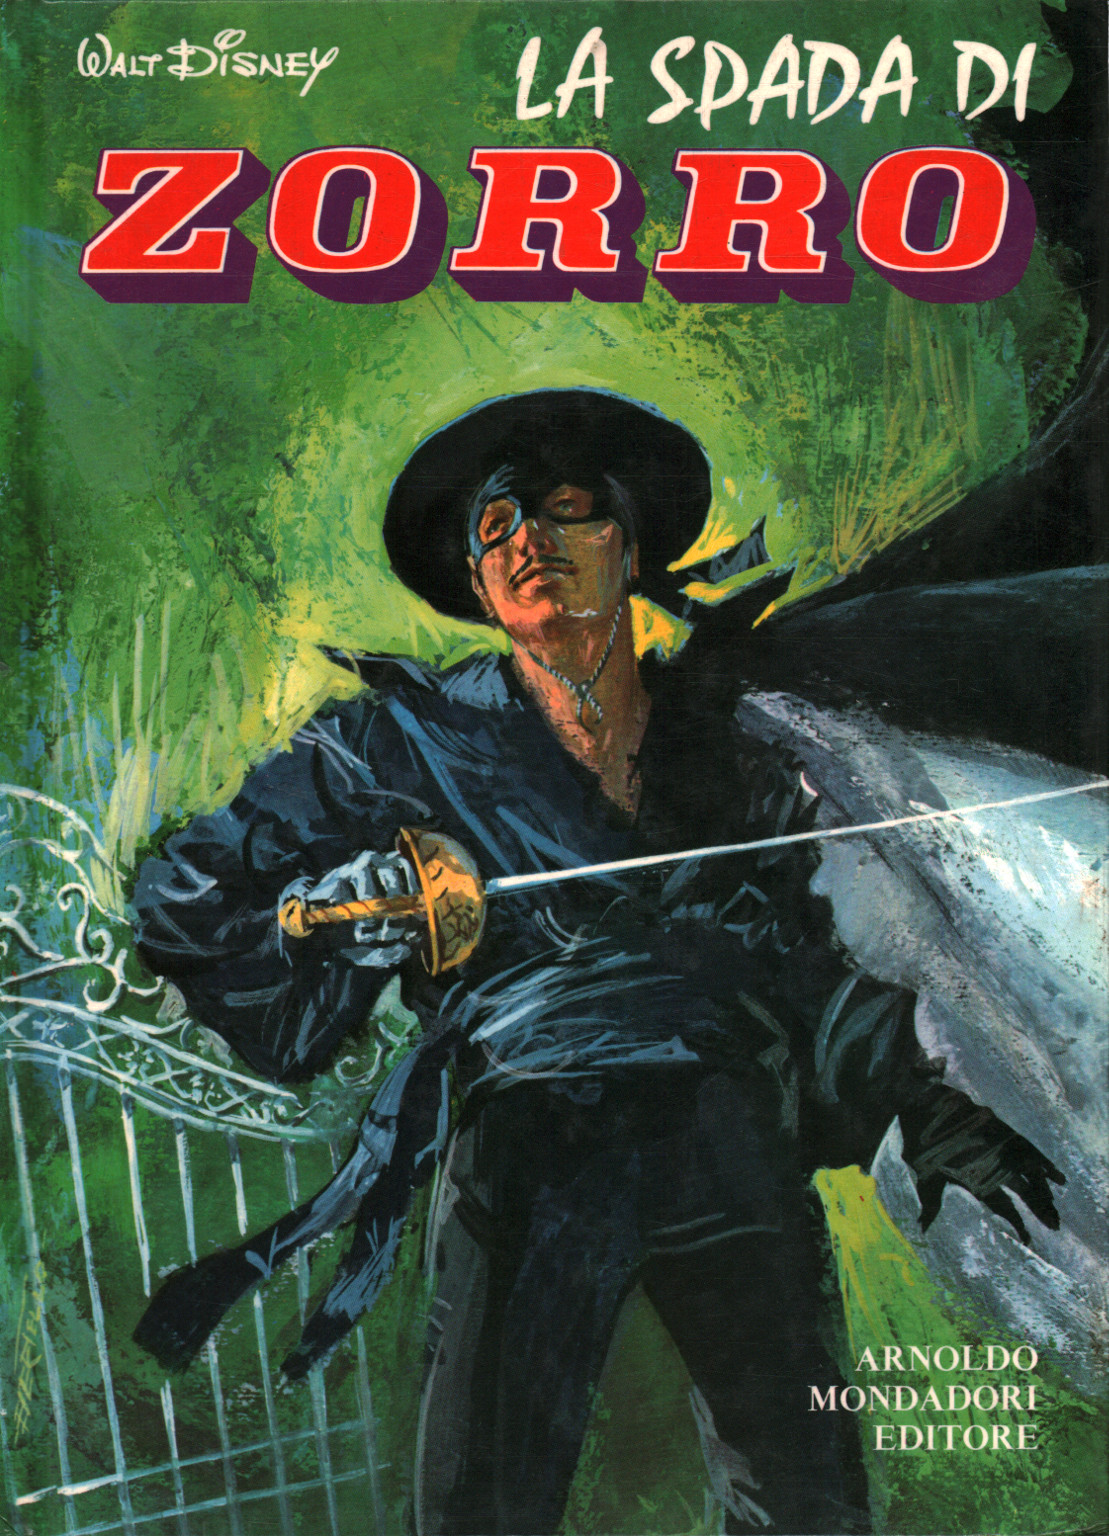 The sword of Zorro, Piero Marcolini